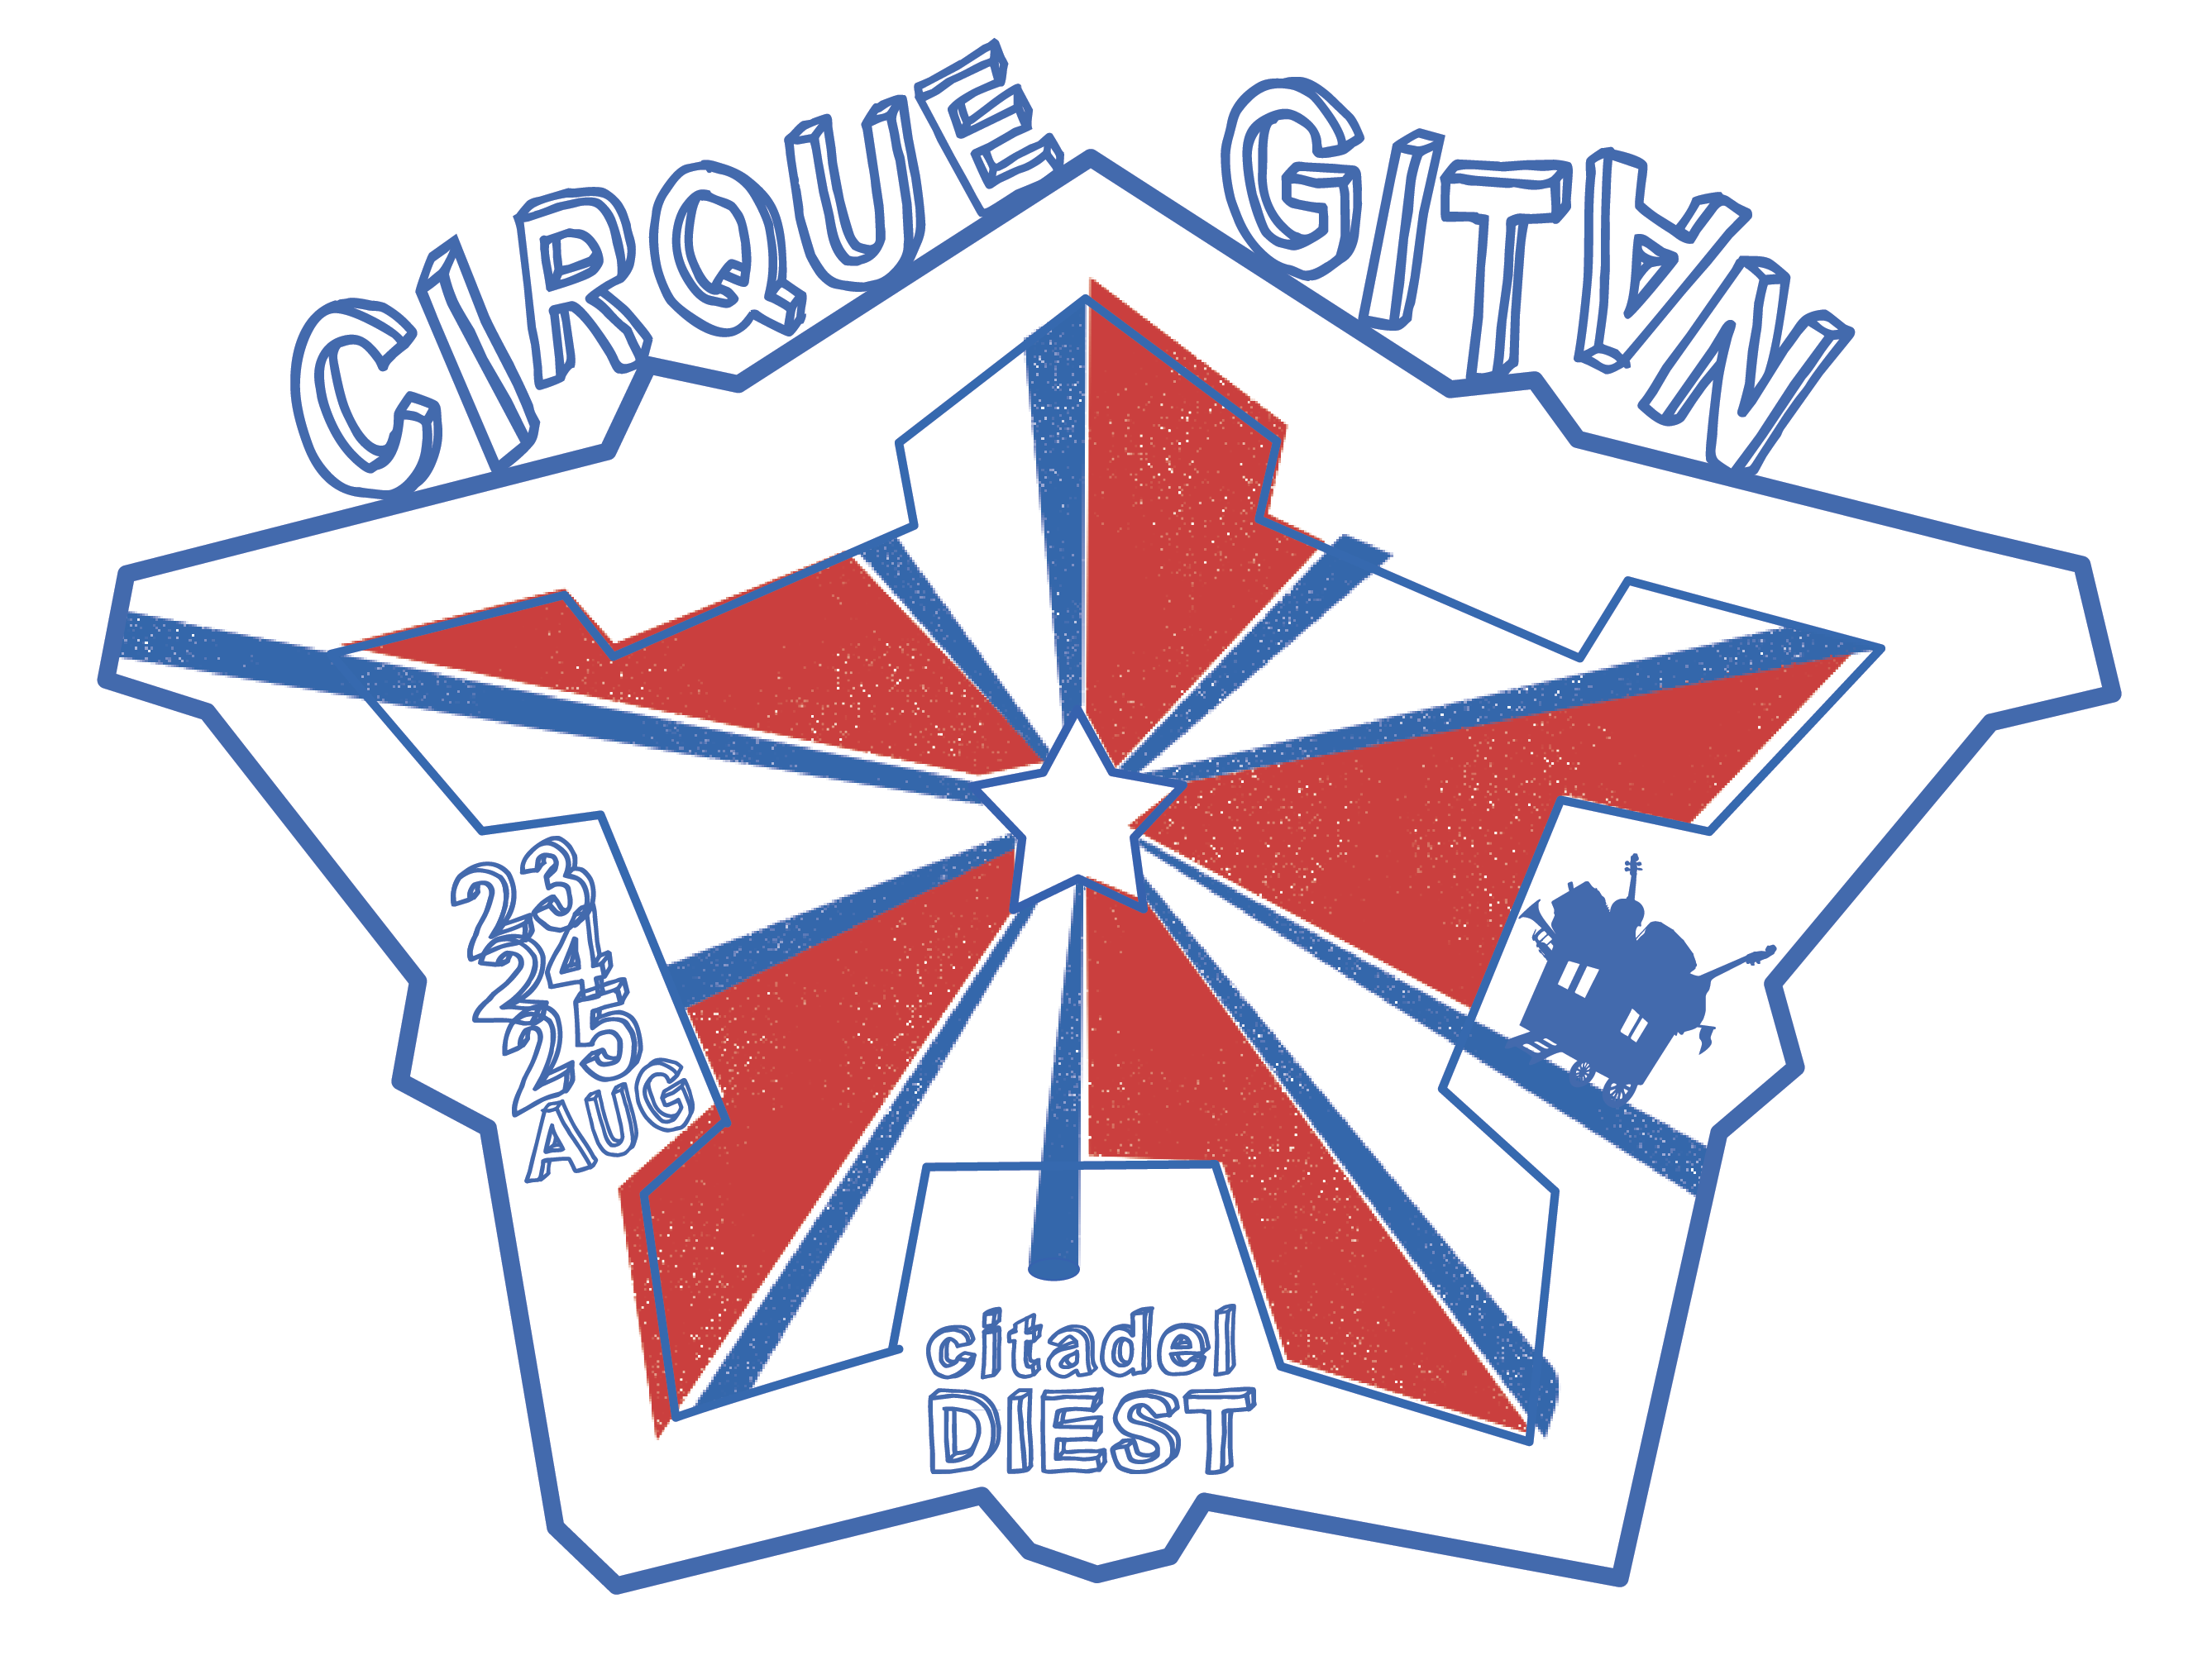 Cirque Gitan